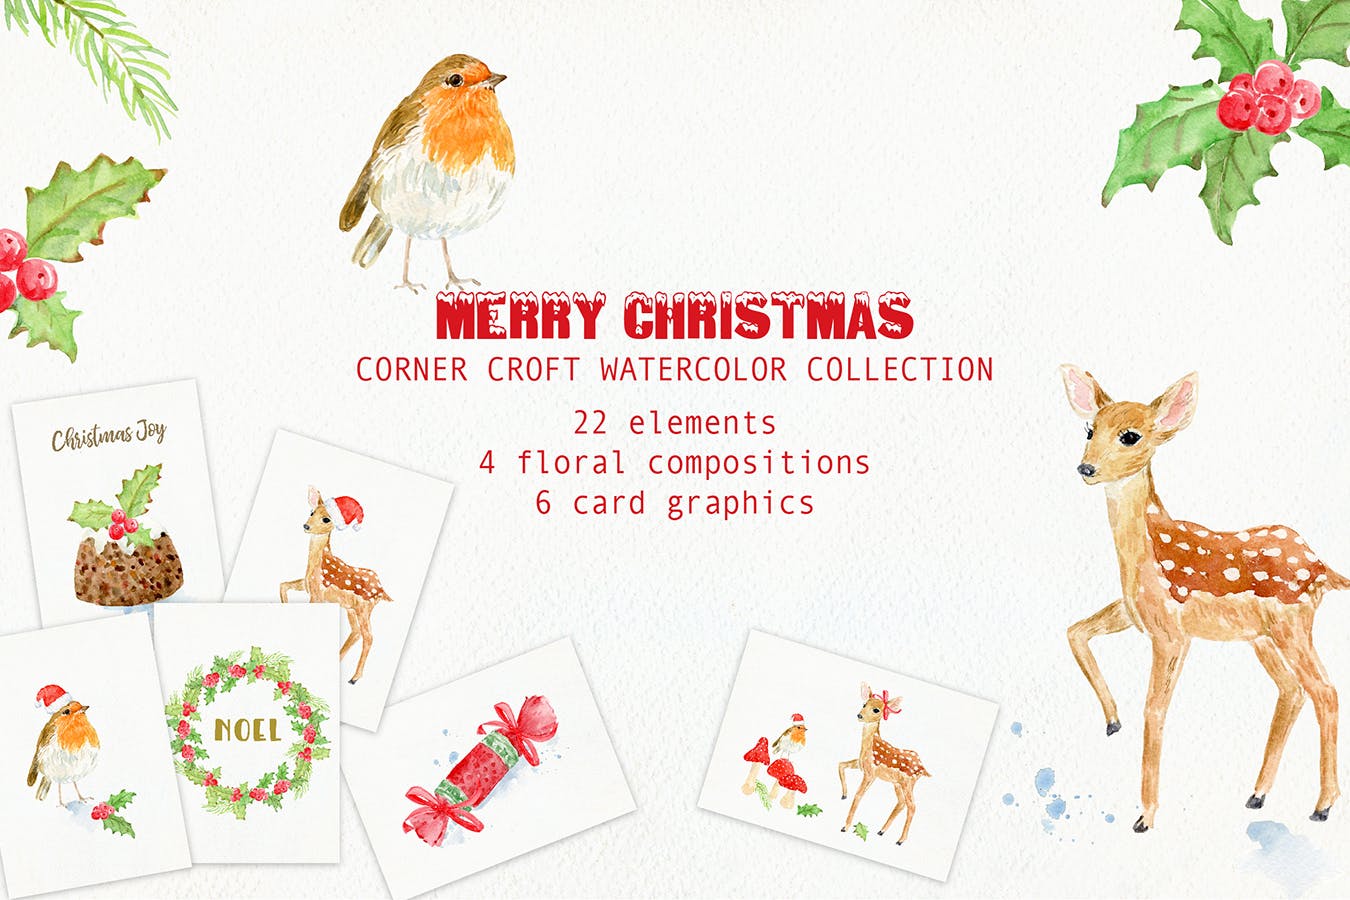 水彩设计风格圣诞节主题卡片设计模板 Watercolor Merry Christmas Cards插图